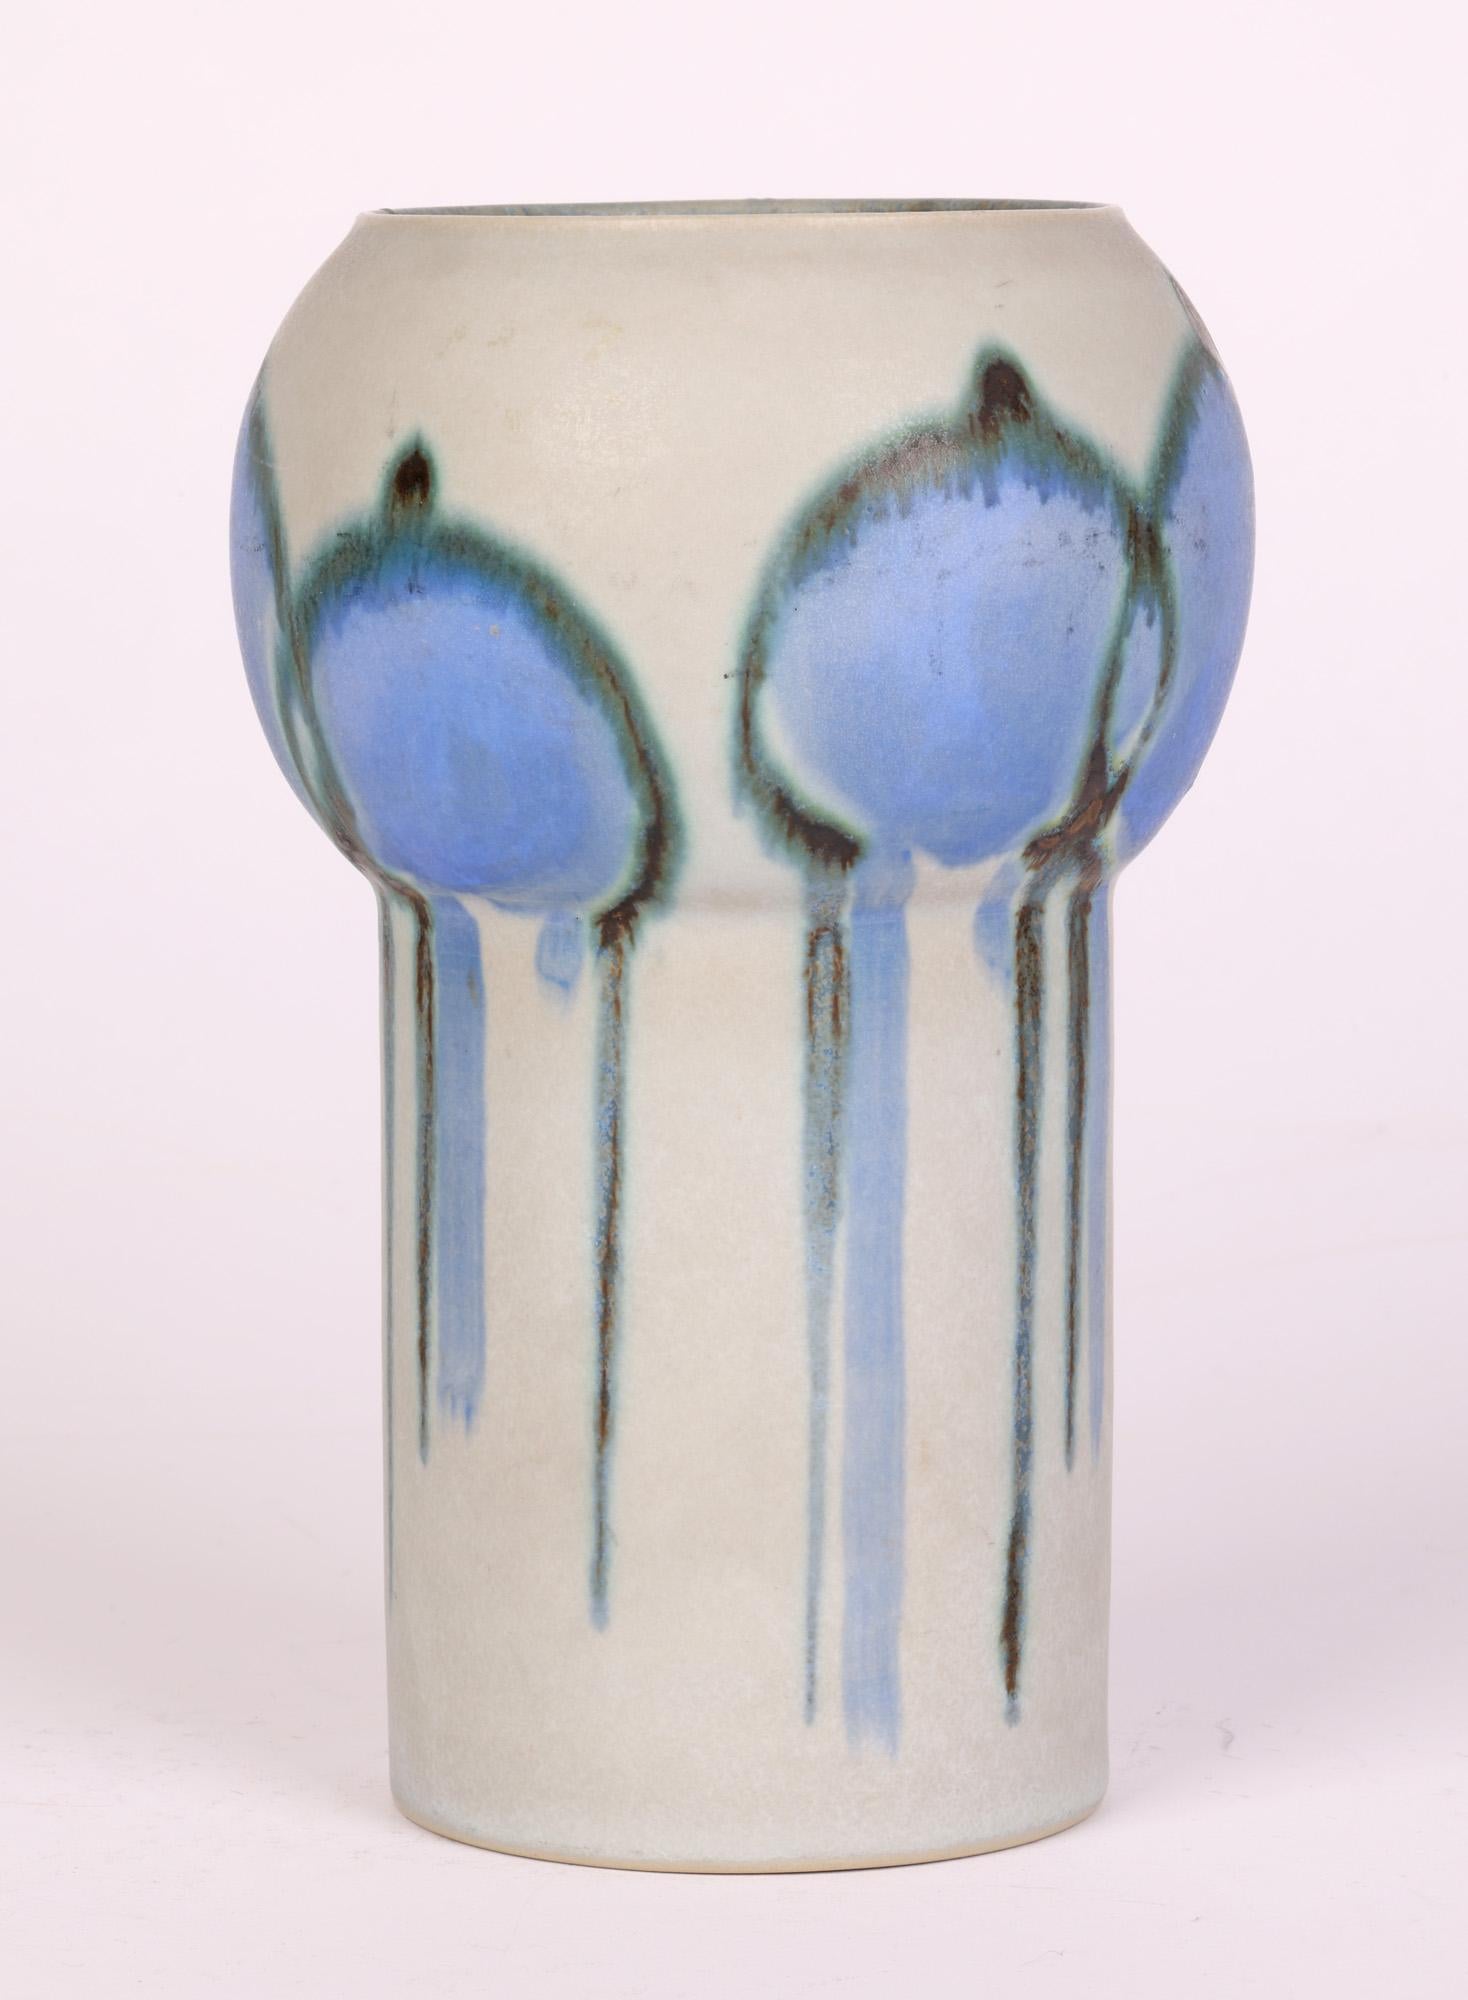 Drejar Gruppen for Rörstrand Swedish Stylized Modern Ceramic Vase, 1973 For Sale 4